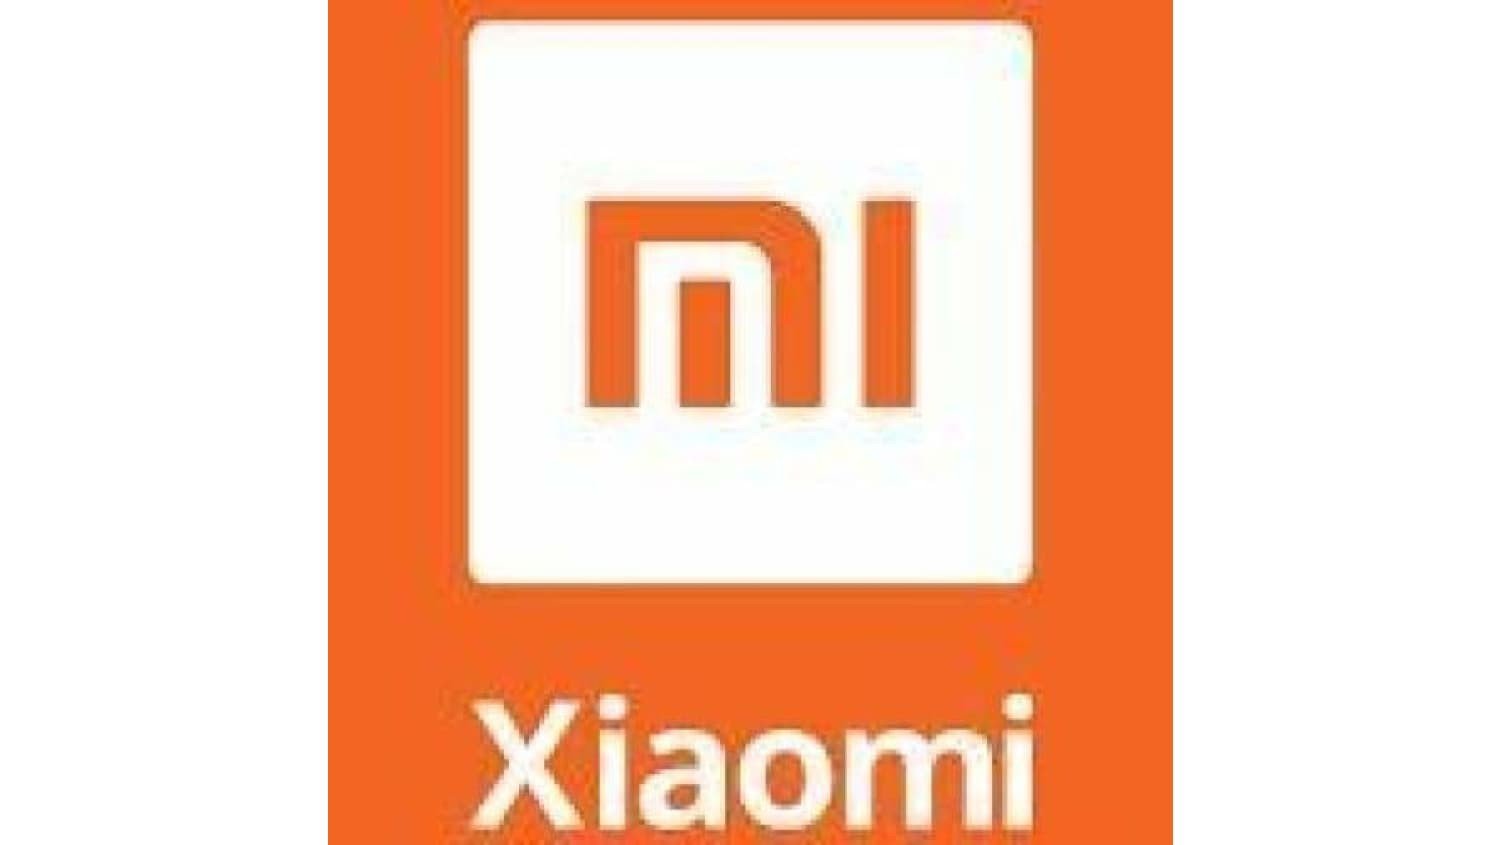 Pièces détachées Détachée Xiaomi M365